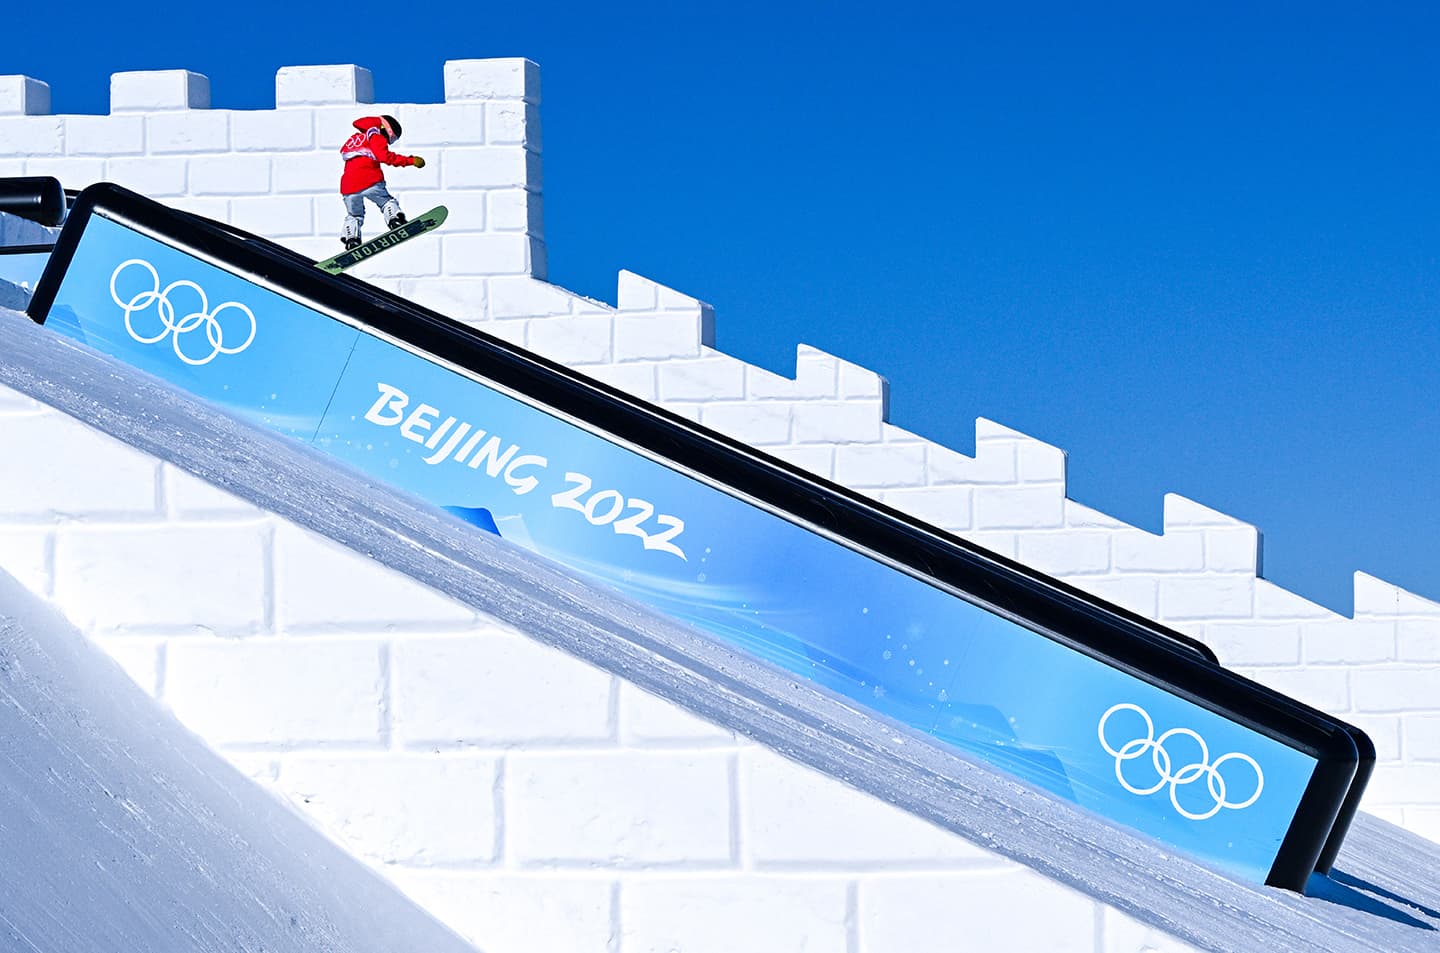 北京2022冬季大会スノーボードスロープスタイル女子決勝